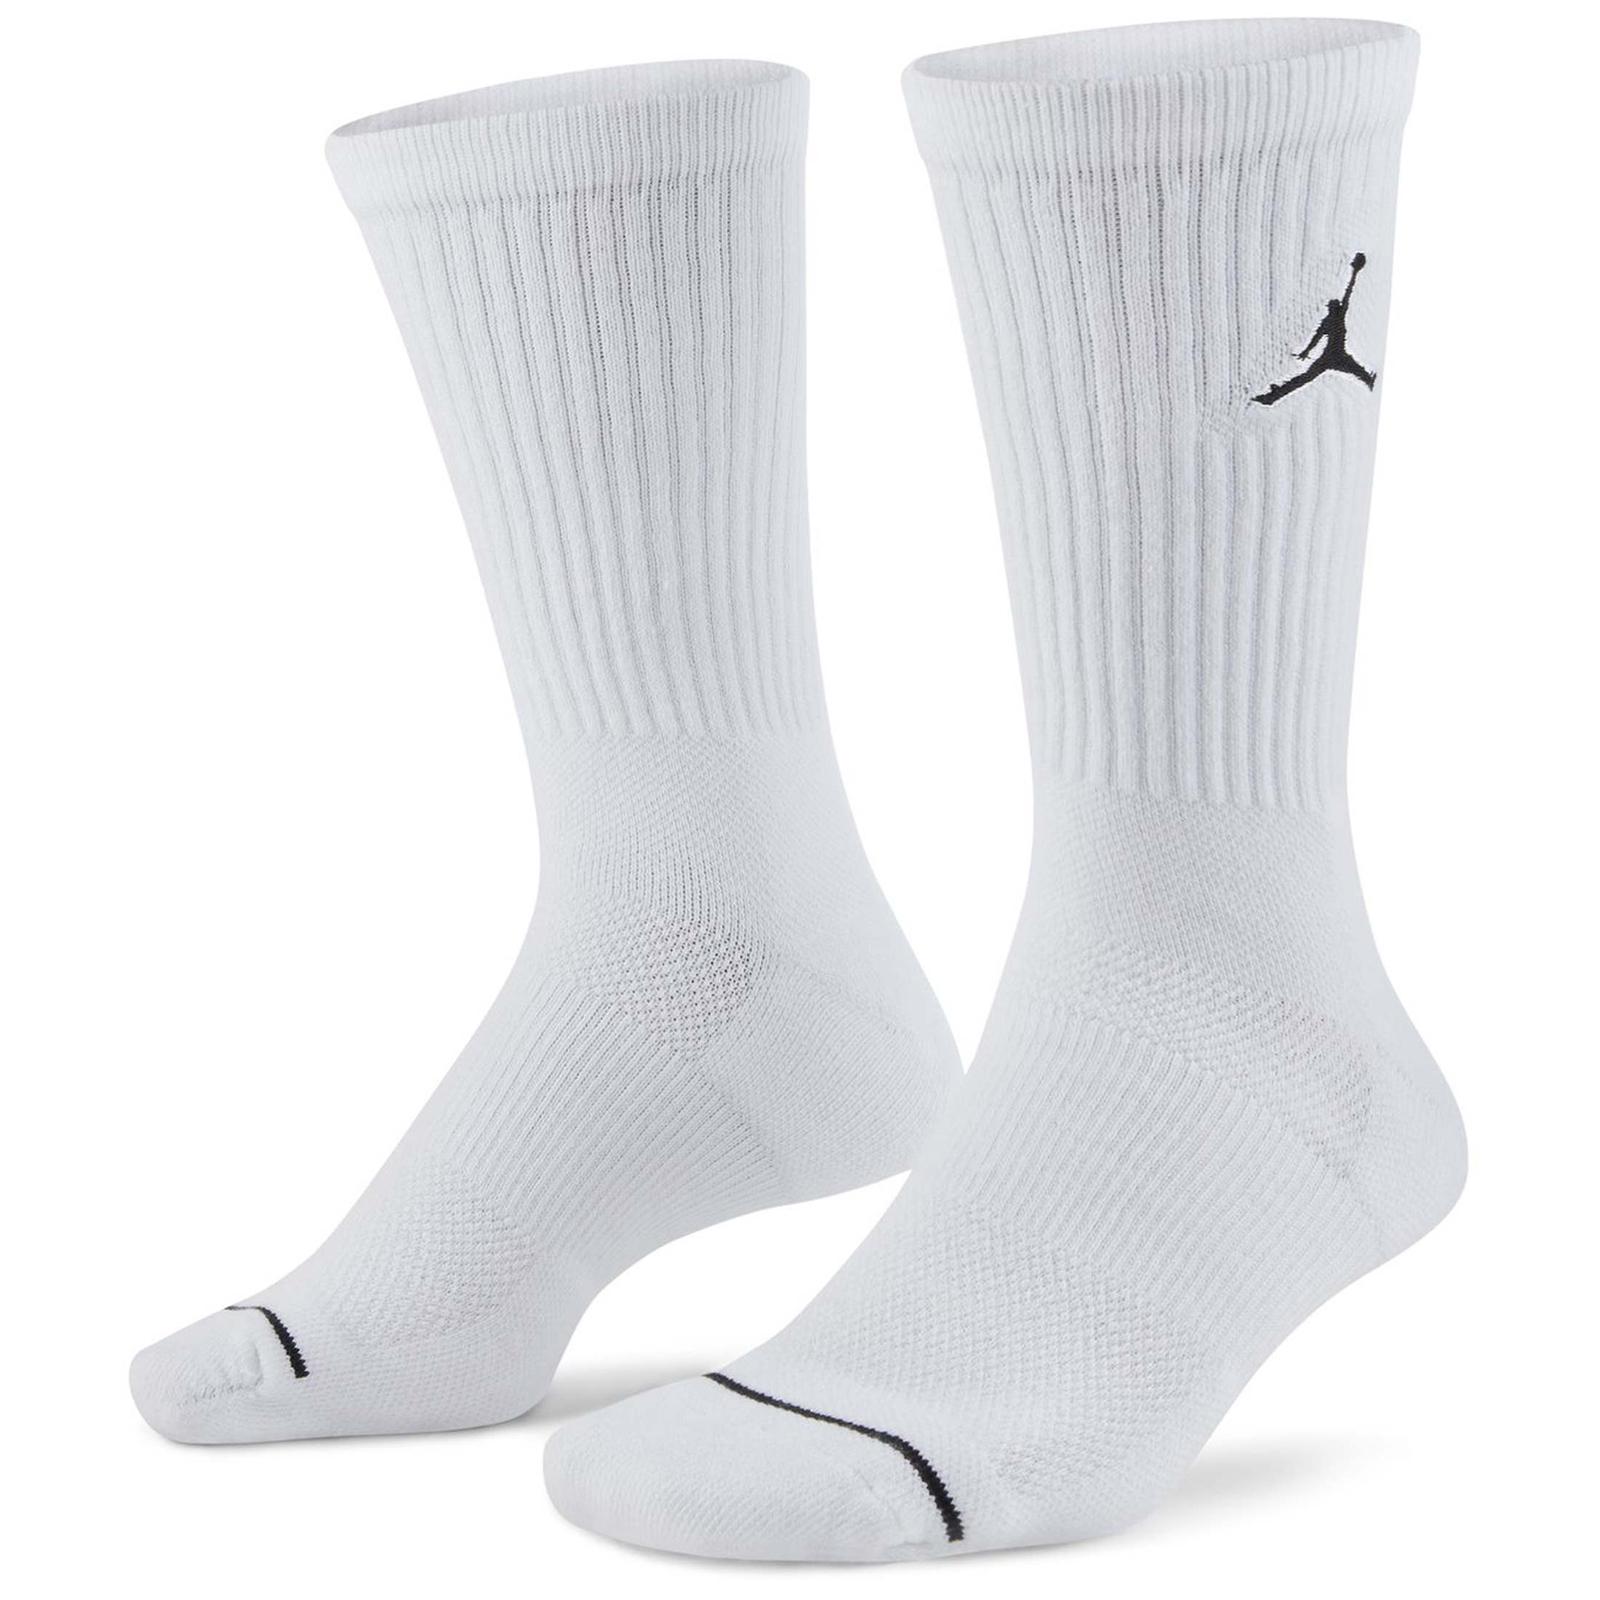 Jordan Jumpman Crew 3er Pack Socken weiß kaufen | Ballside